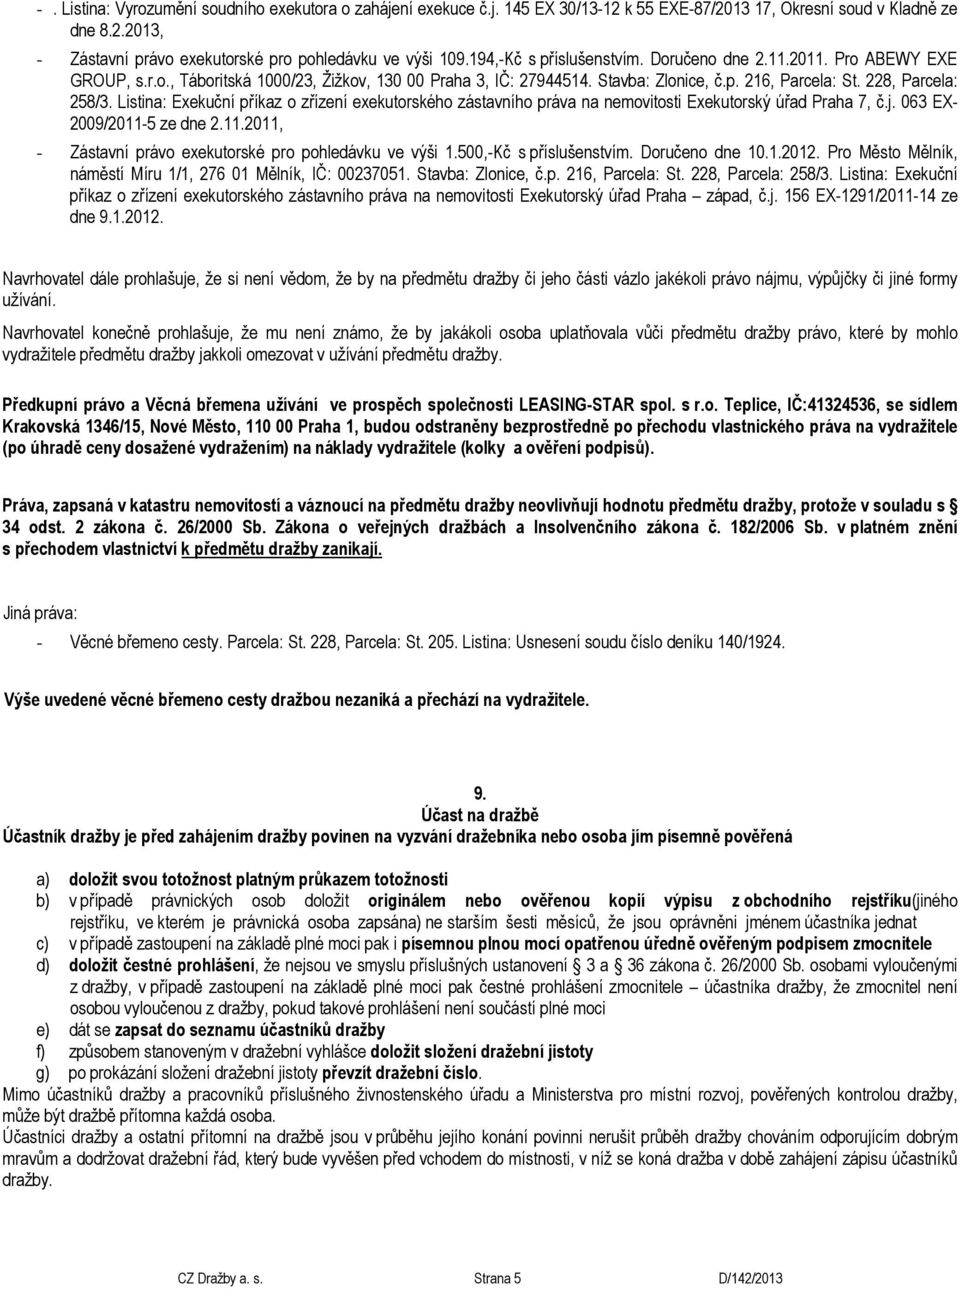 Listina: Exekuční příkaz o zřízení exekutorského zástavního práva na nemovitosti Exekutorský úřad Praha 7, č.j. 063 EX- 2009/2011-5 ze dne 2.11.2011, - Zástavní právo exekutorské pro pohledávku ve výši 1.